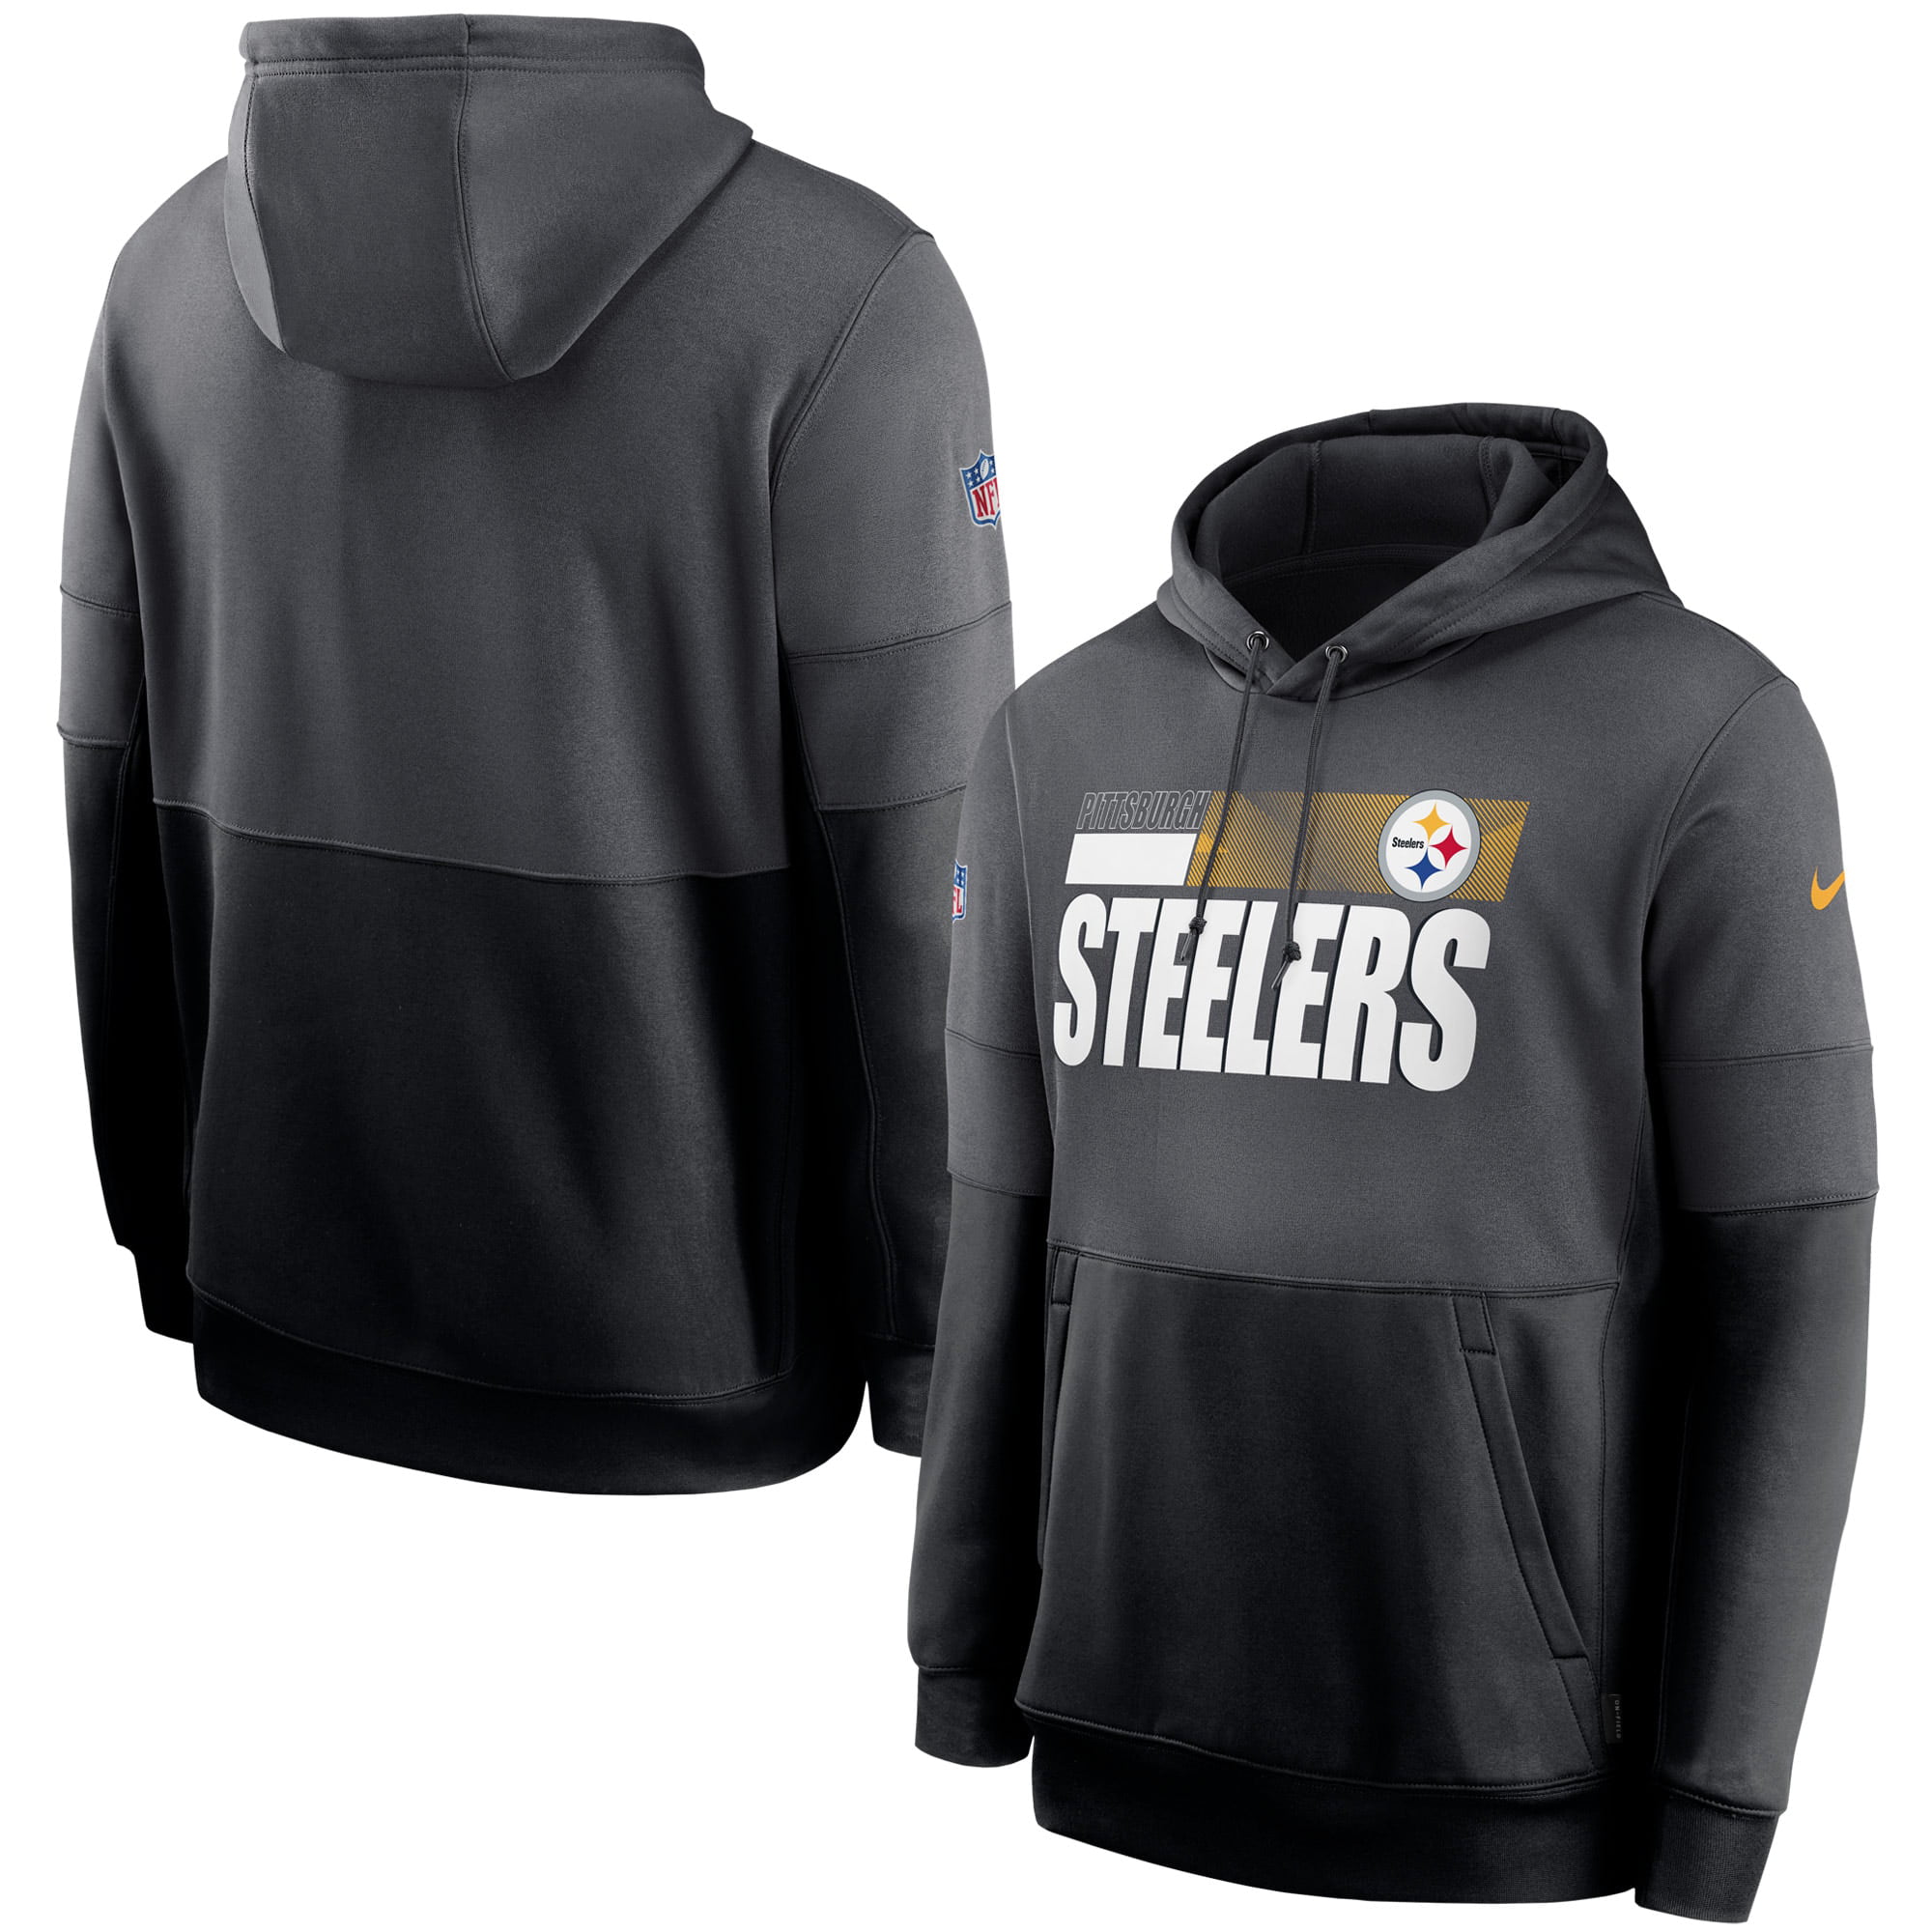 steelers performance hoodie